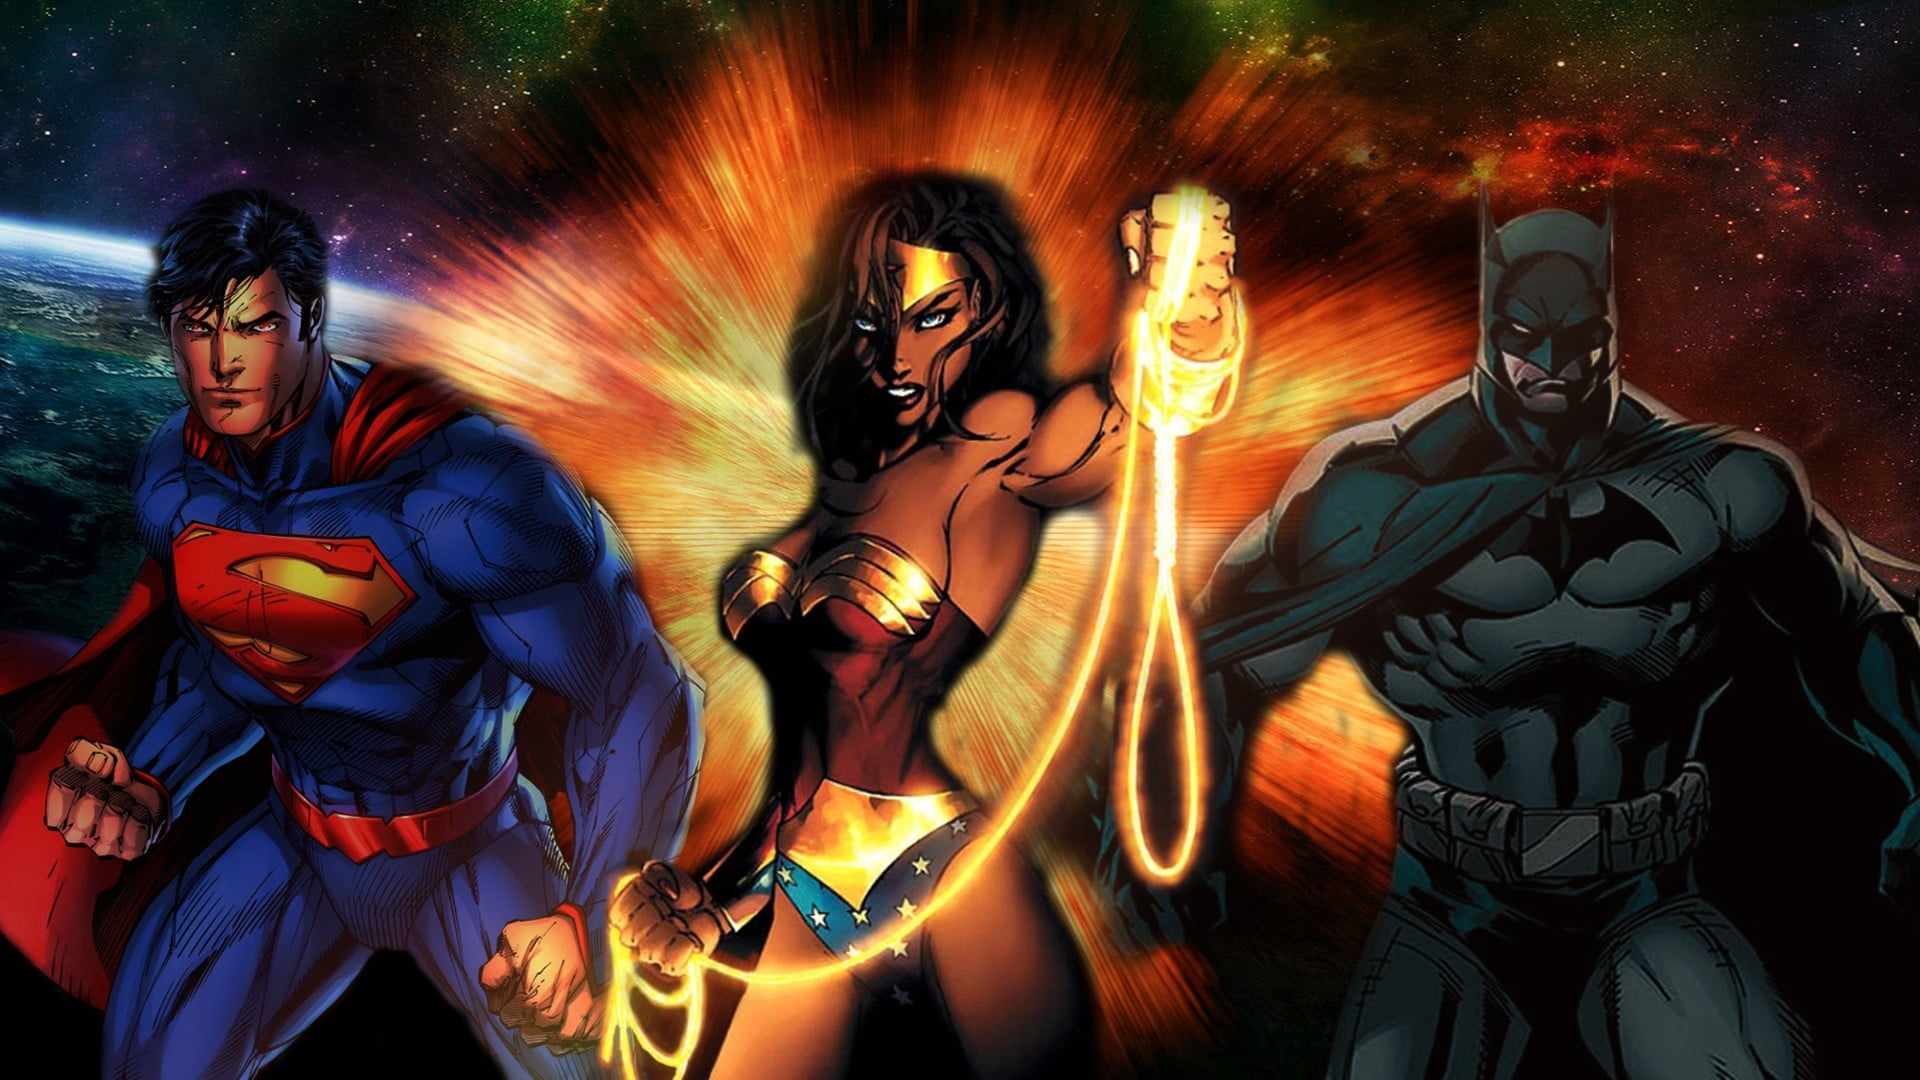 Superman, Wonder woman and Batman wallpaper, DC Comics, Justice League